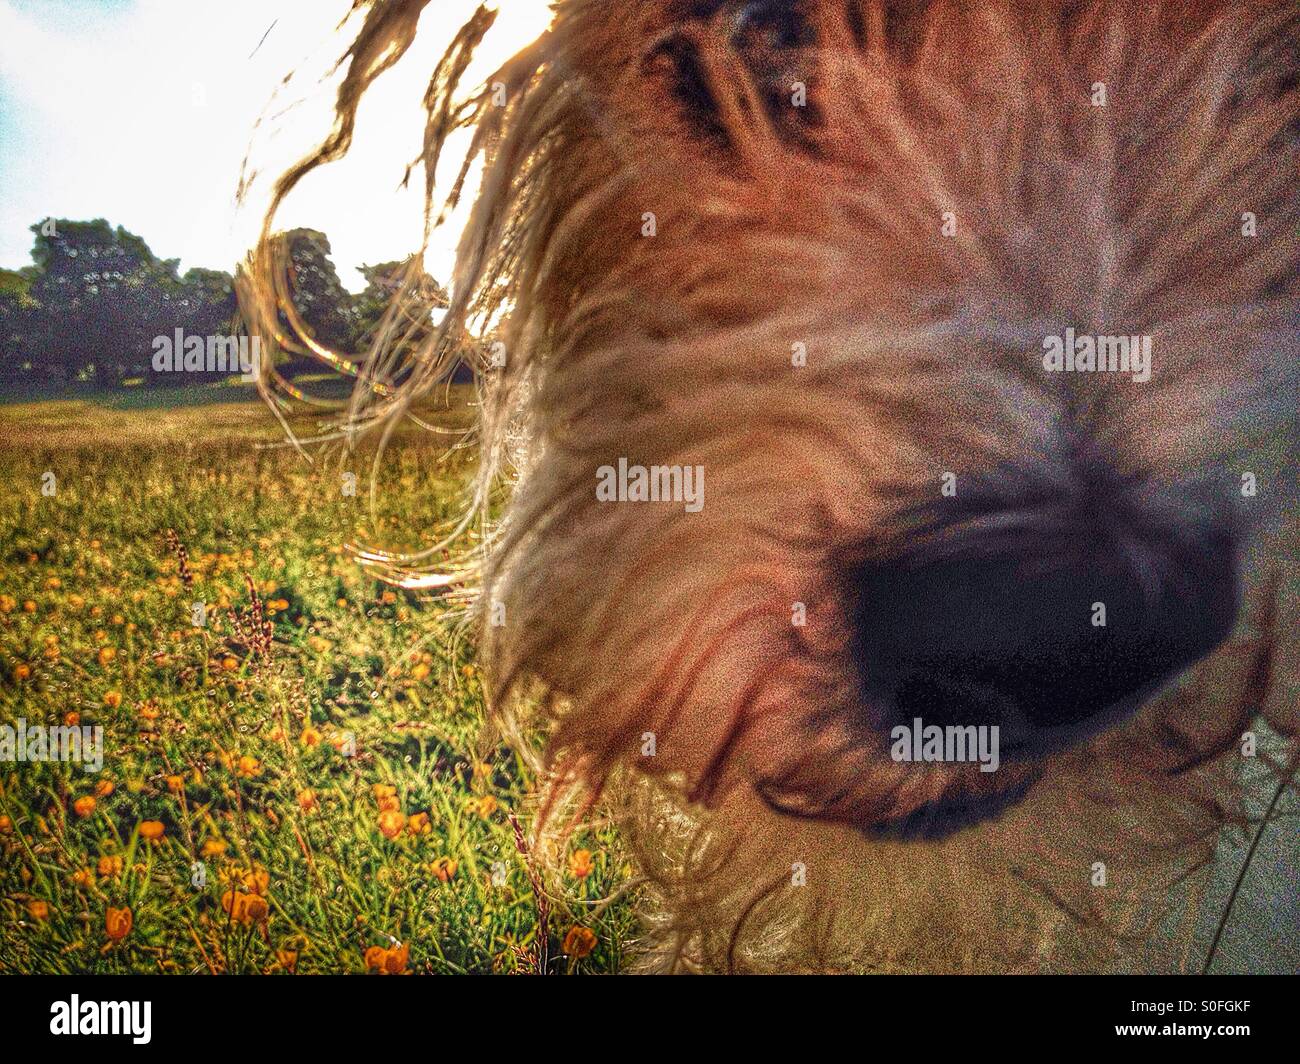 Dog photo bombing landscape Stock Photo